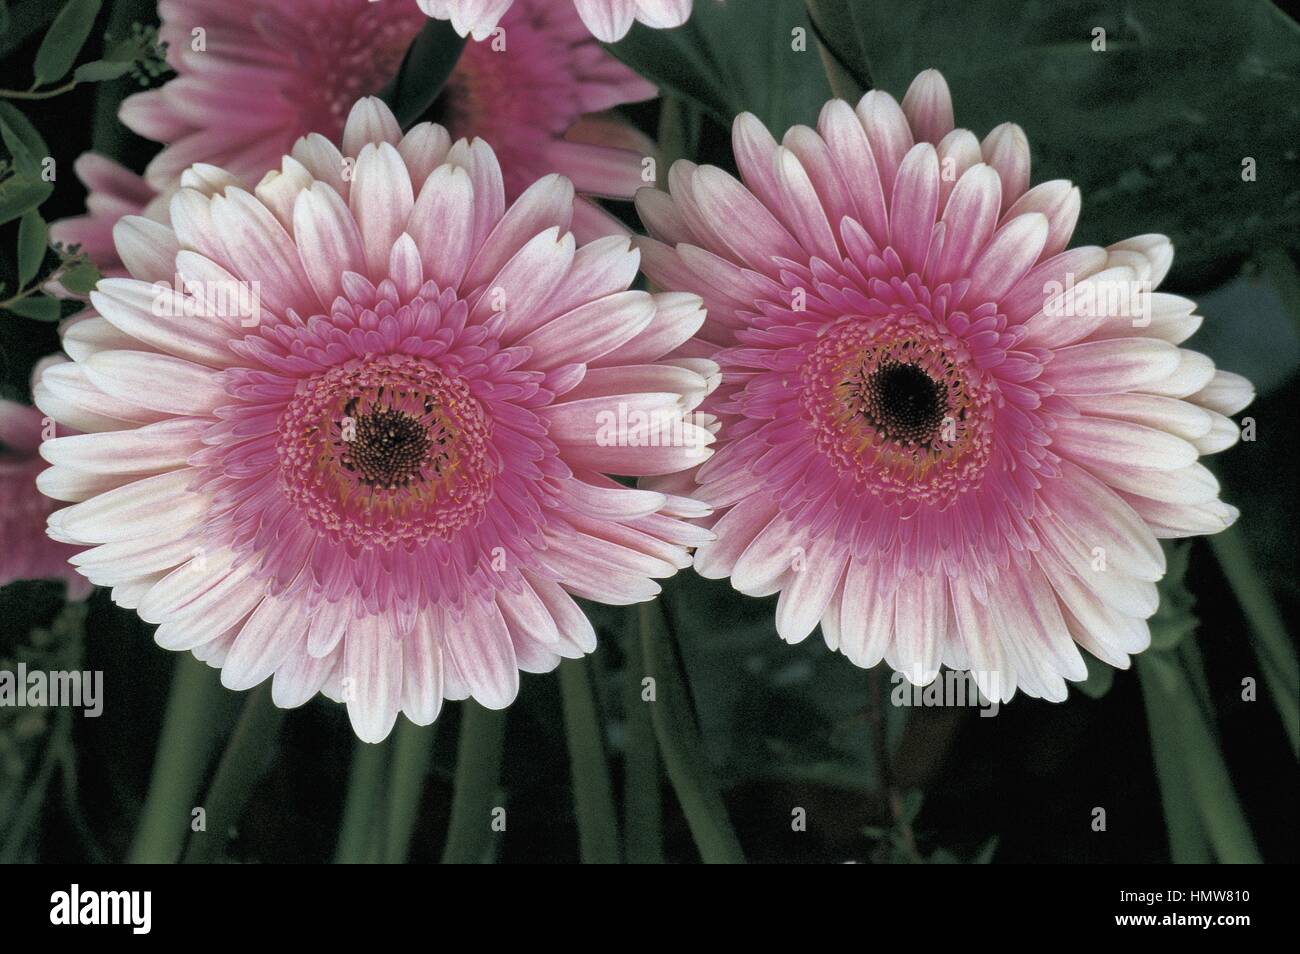 Botany - Asteraceae. Transvaal daisy (Gerbera 'Relax') Stock Photo